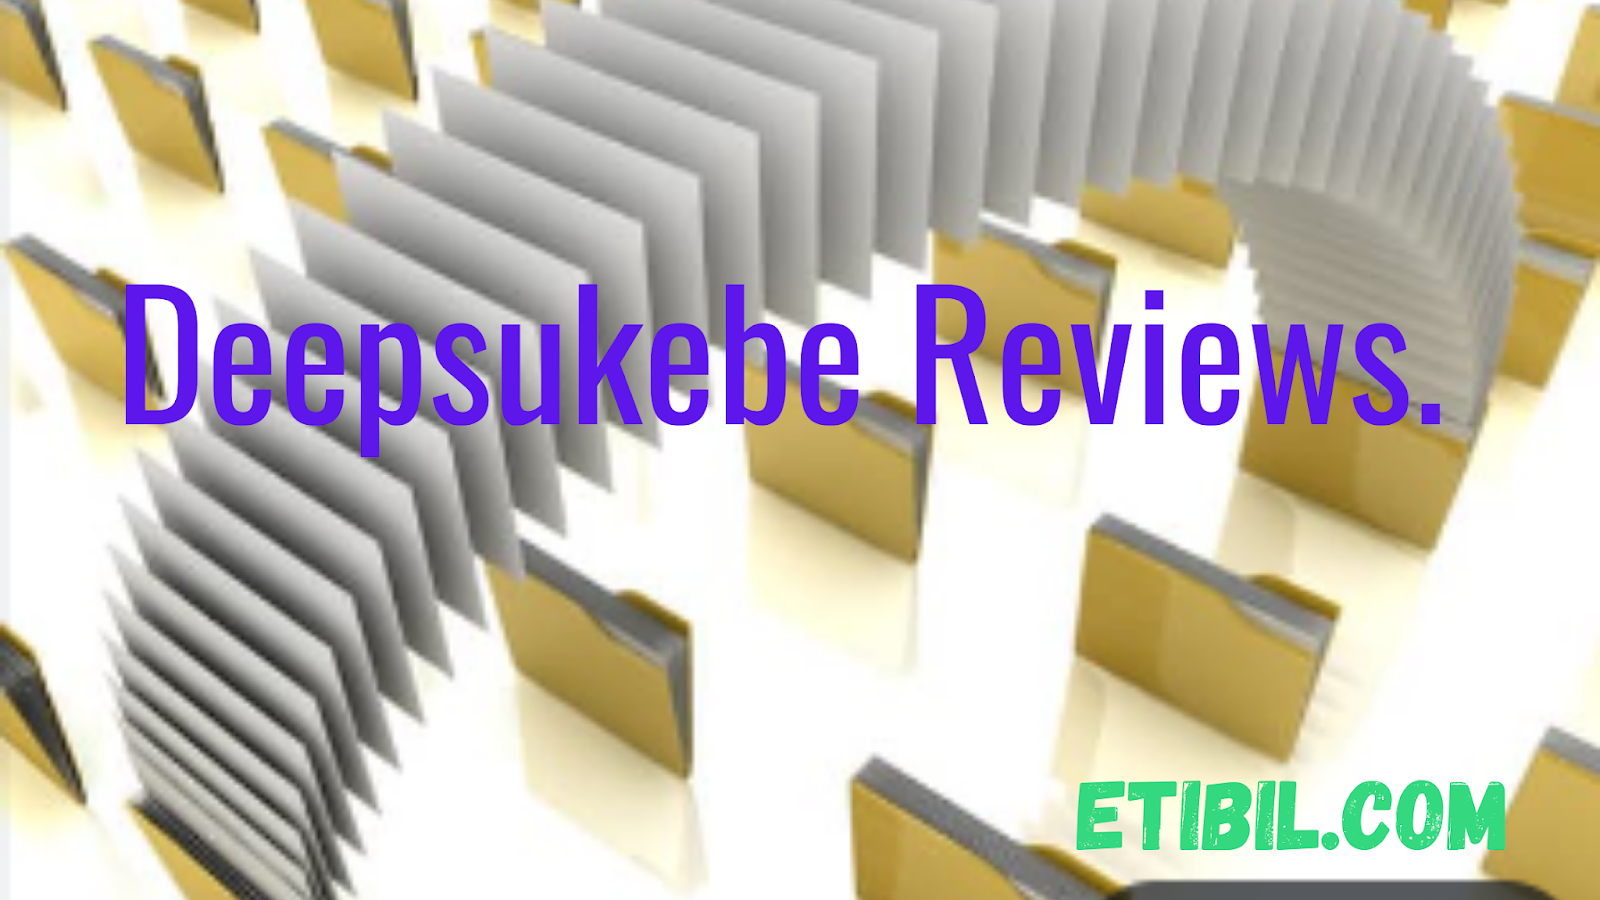 Deepsukebe Review : is deepsukebe legit or scam